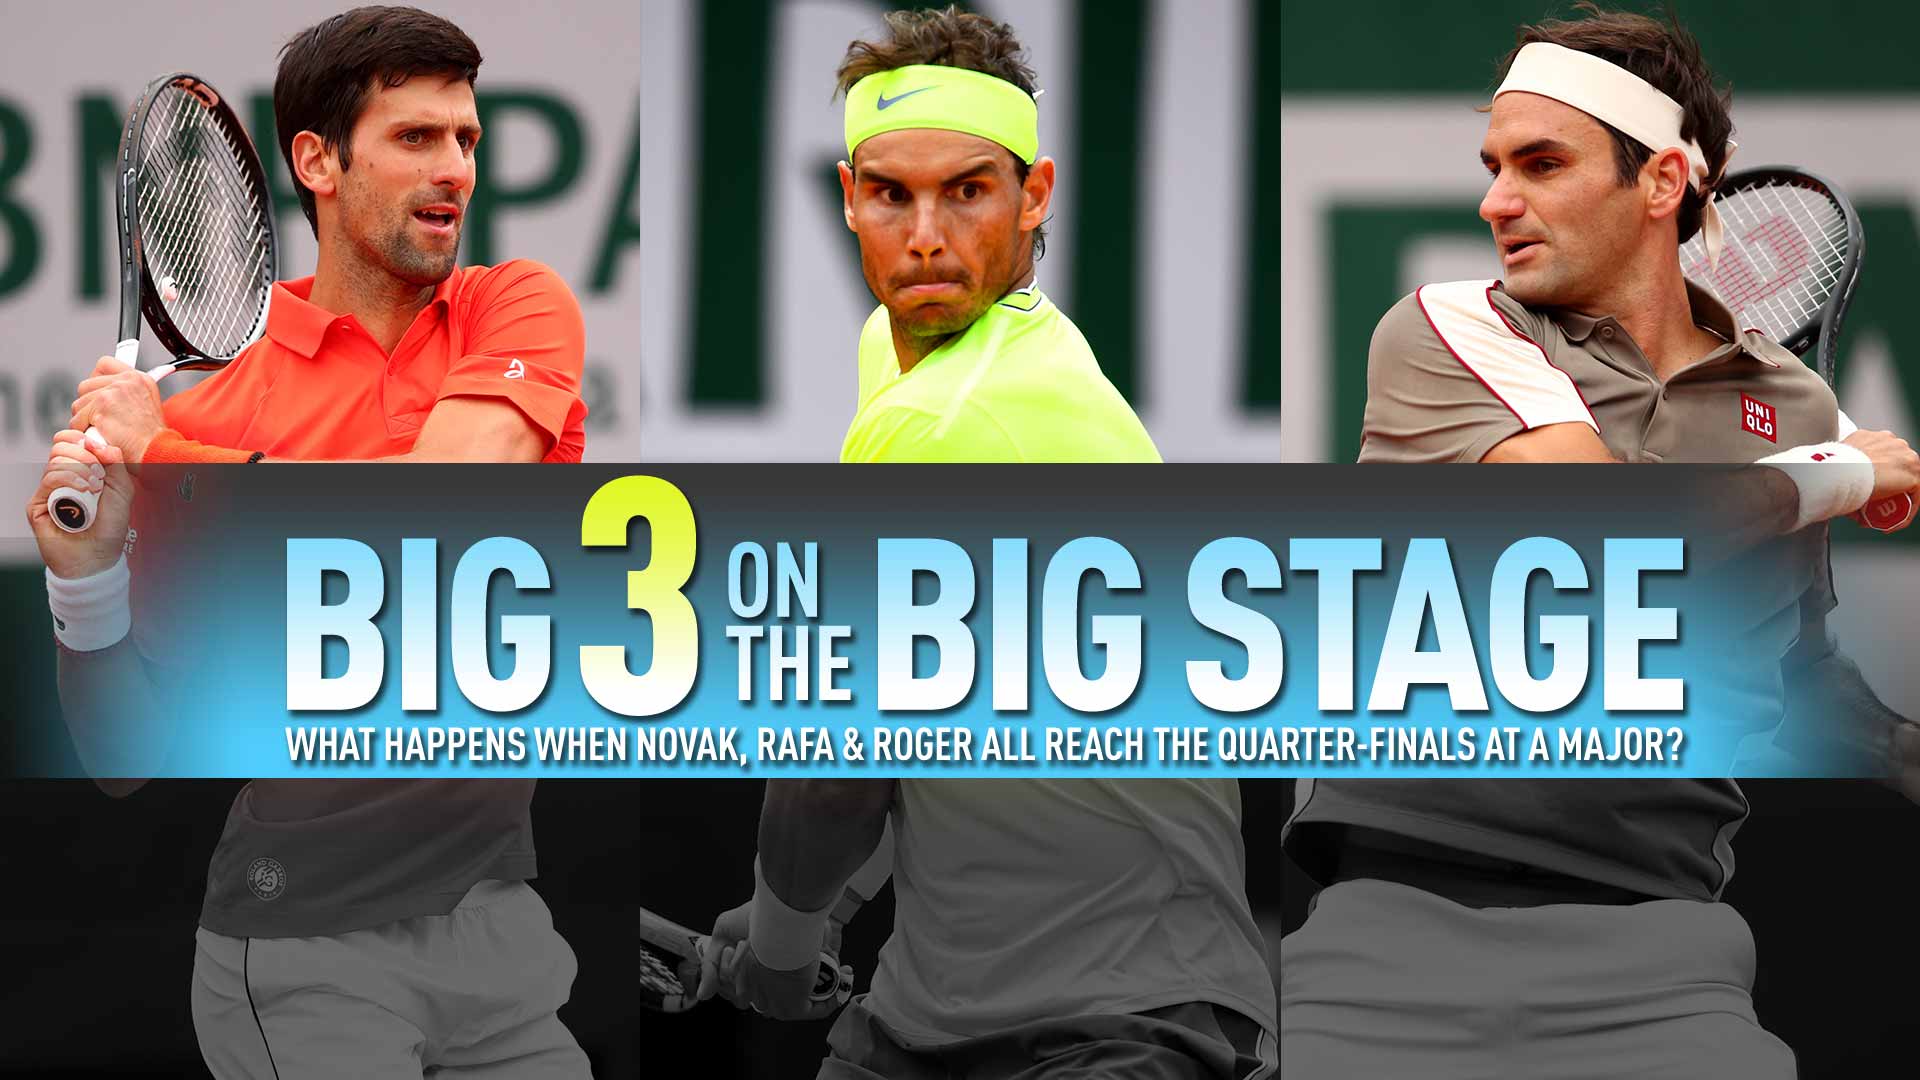 Статистиката: За 23 път Федерер, Надал и Джокович заедно на 1/4 финал в Шлема